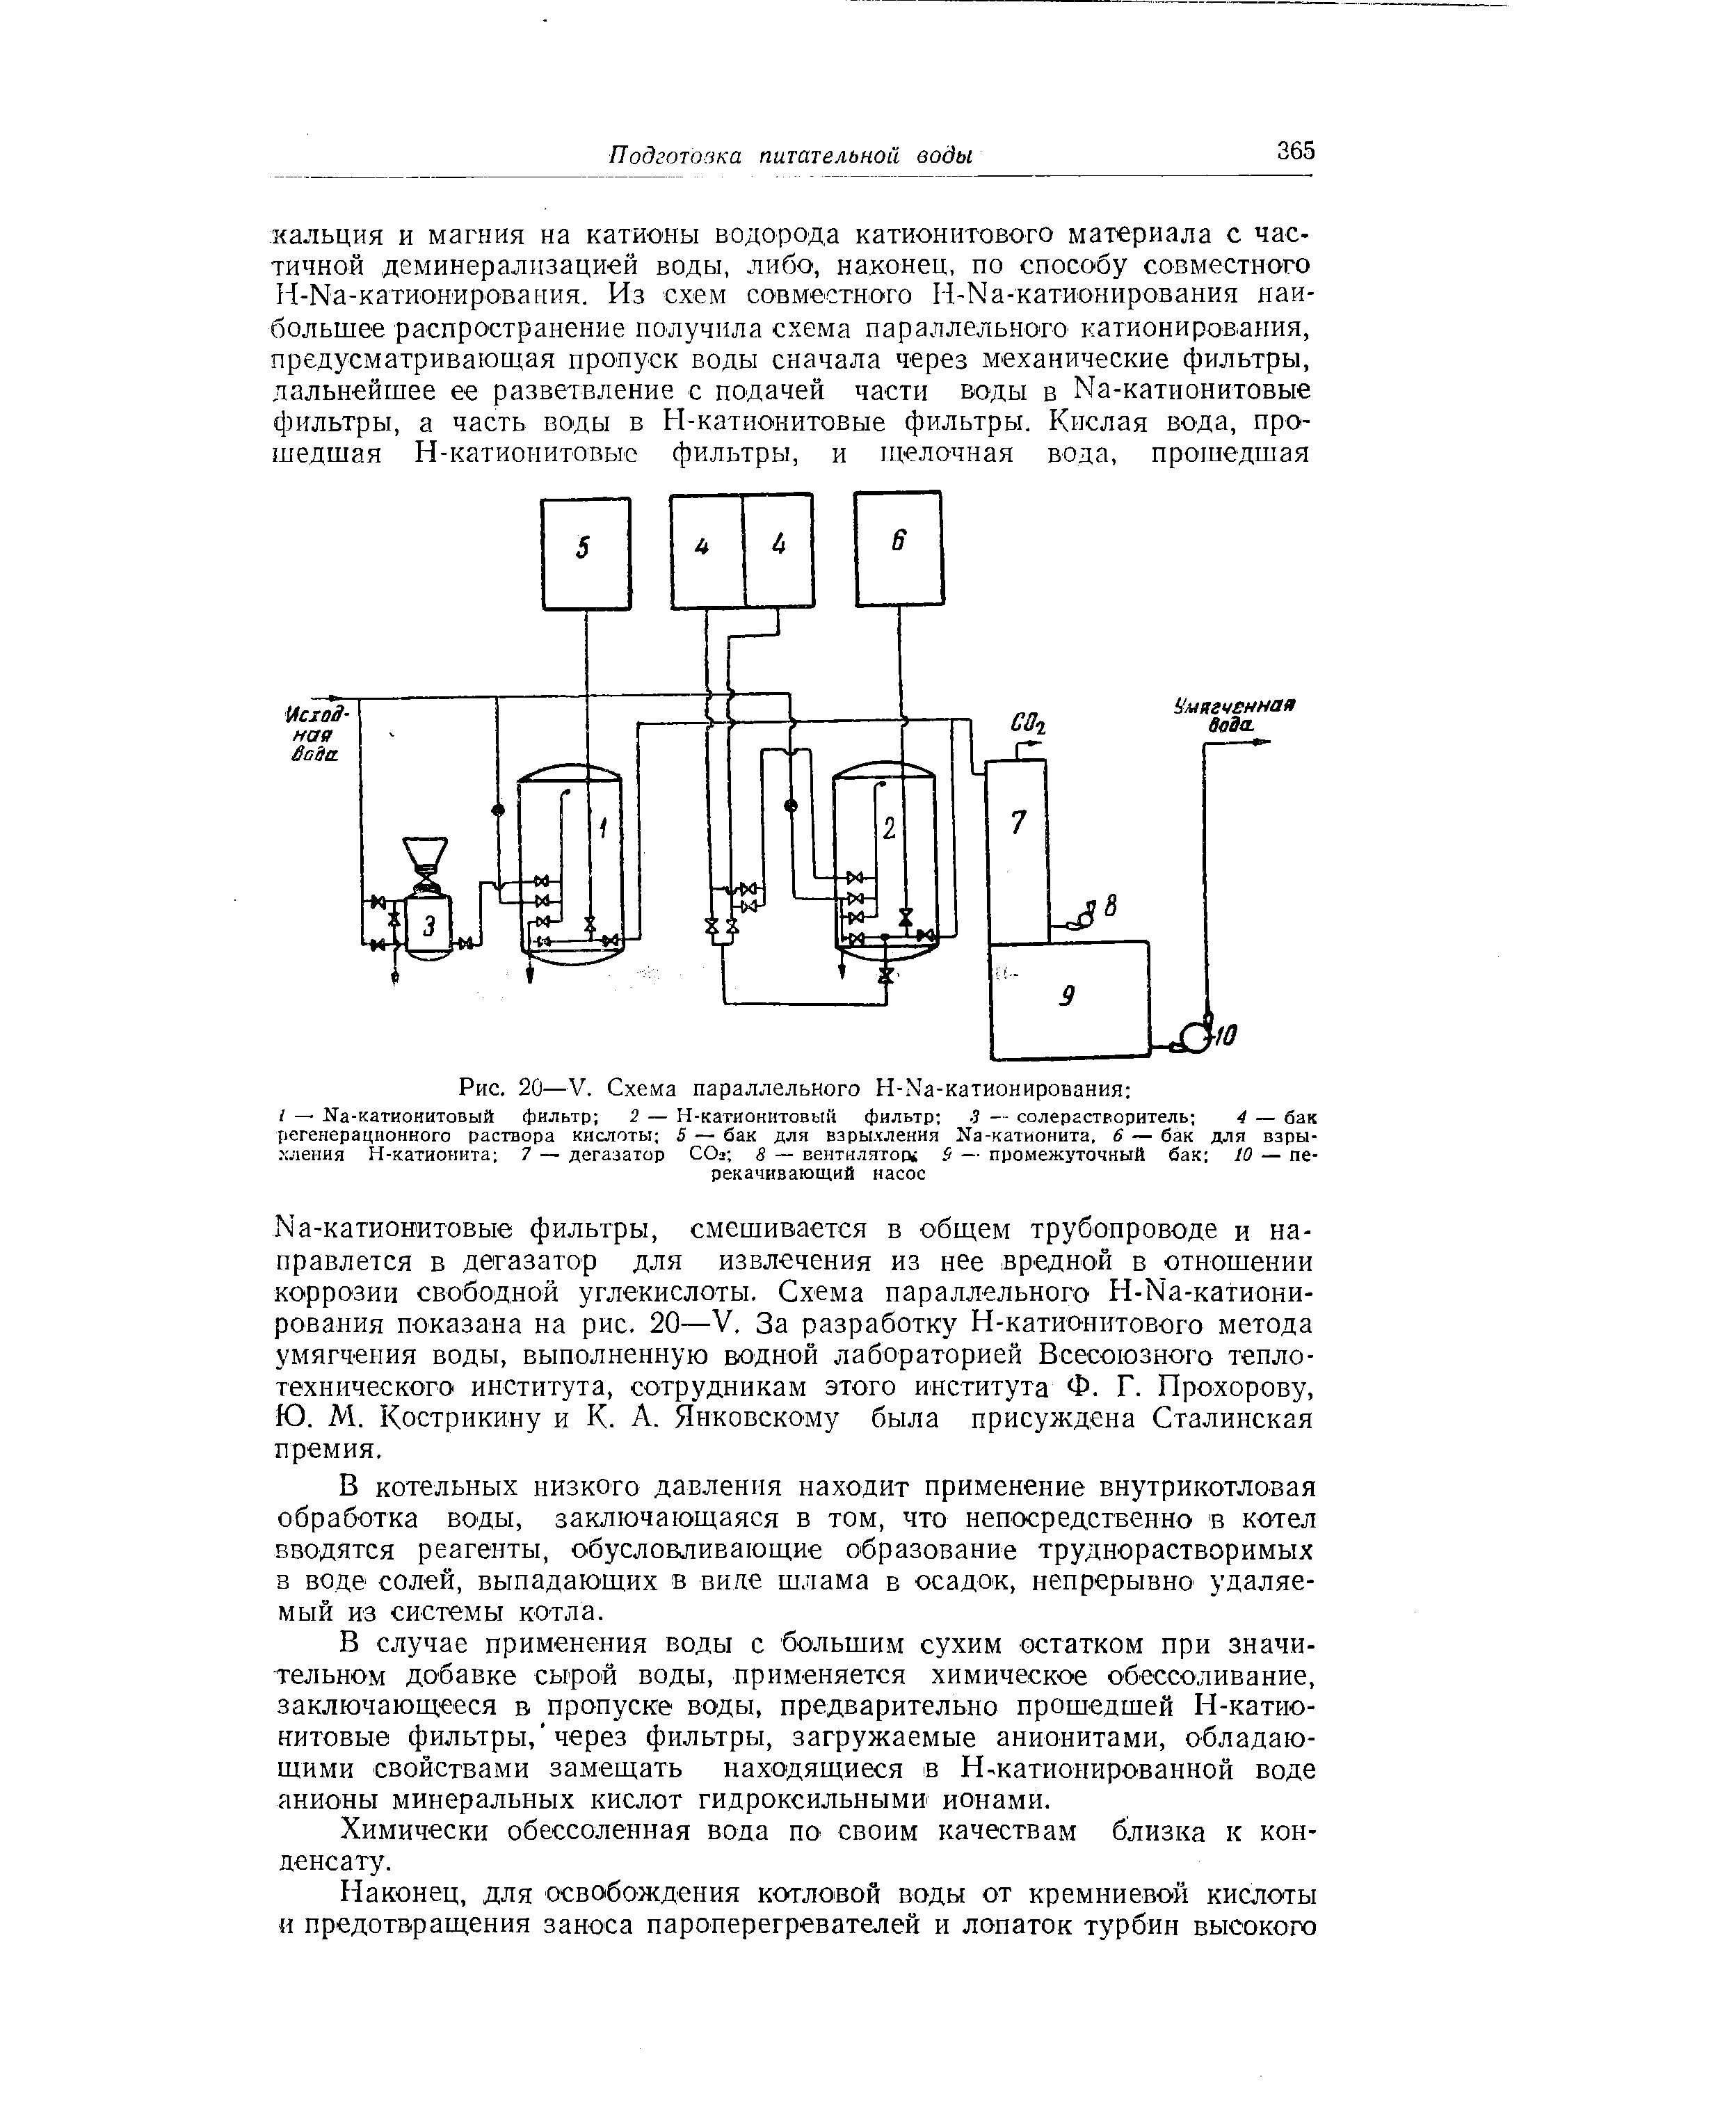 Рис. 20—V. Схема параллельного Н-Ма-катионирования 
